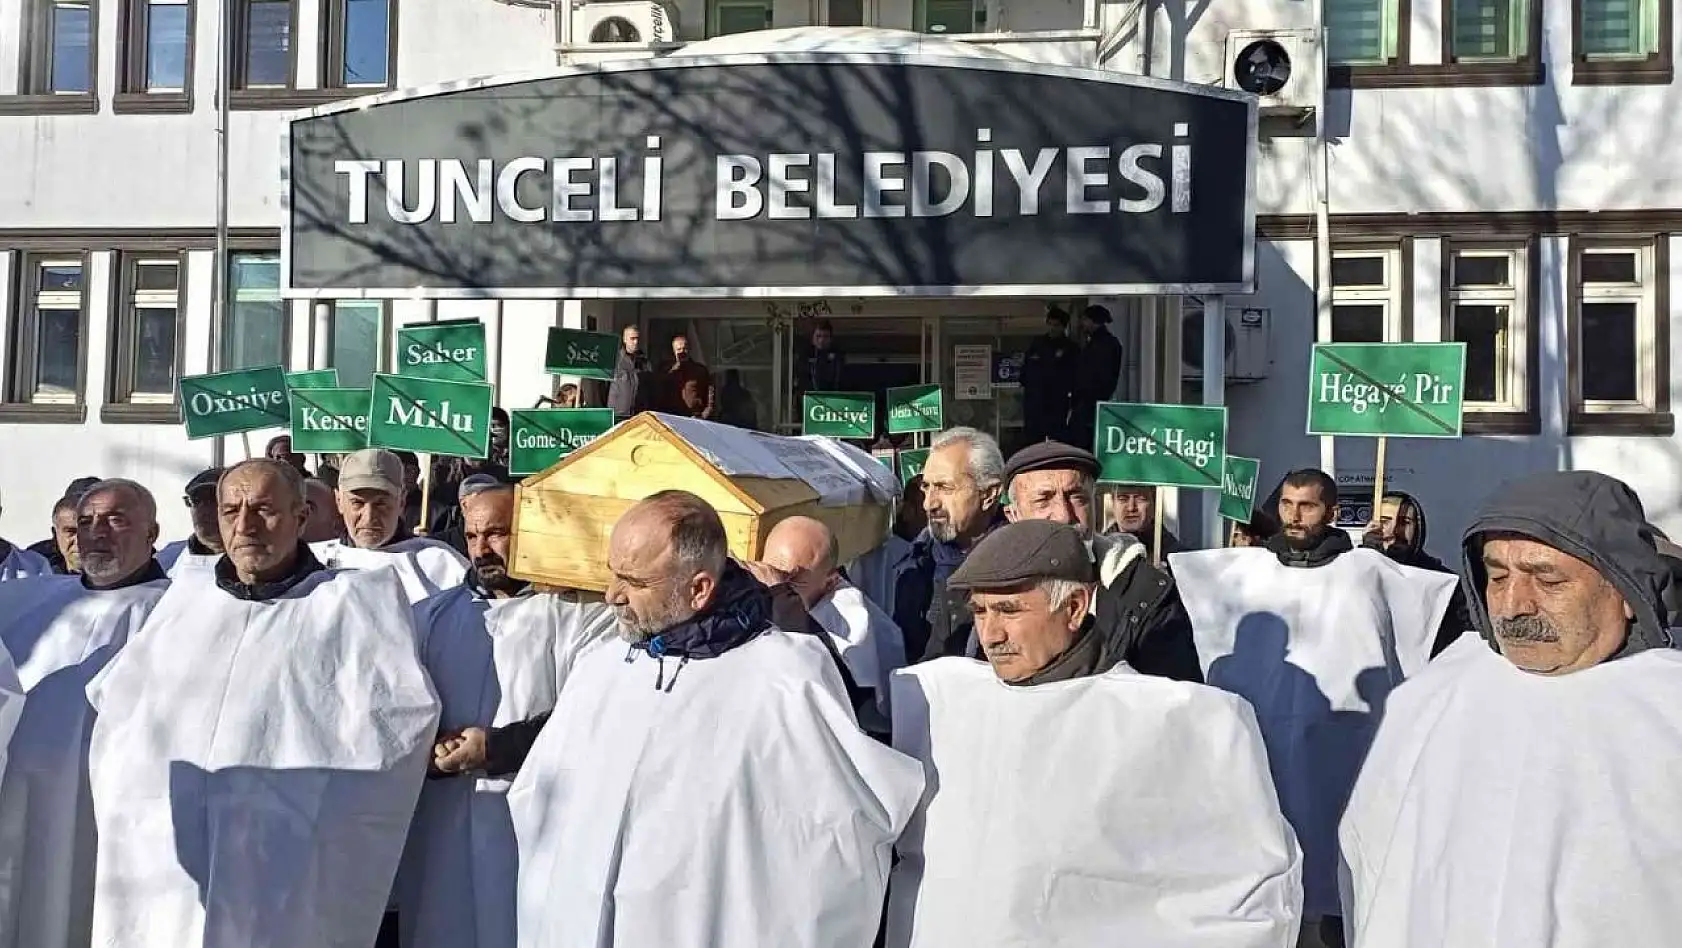 Tunceli'de köylüler, belediyeyi tabut ve kefenlerle protesto etti